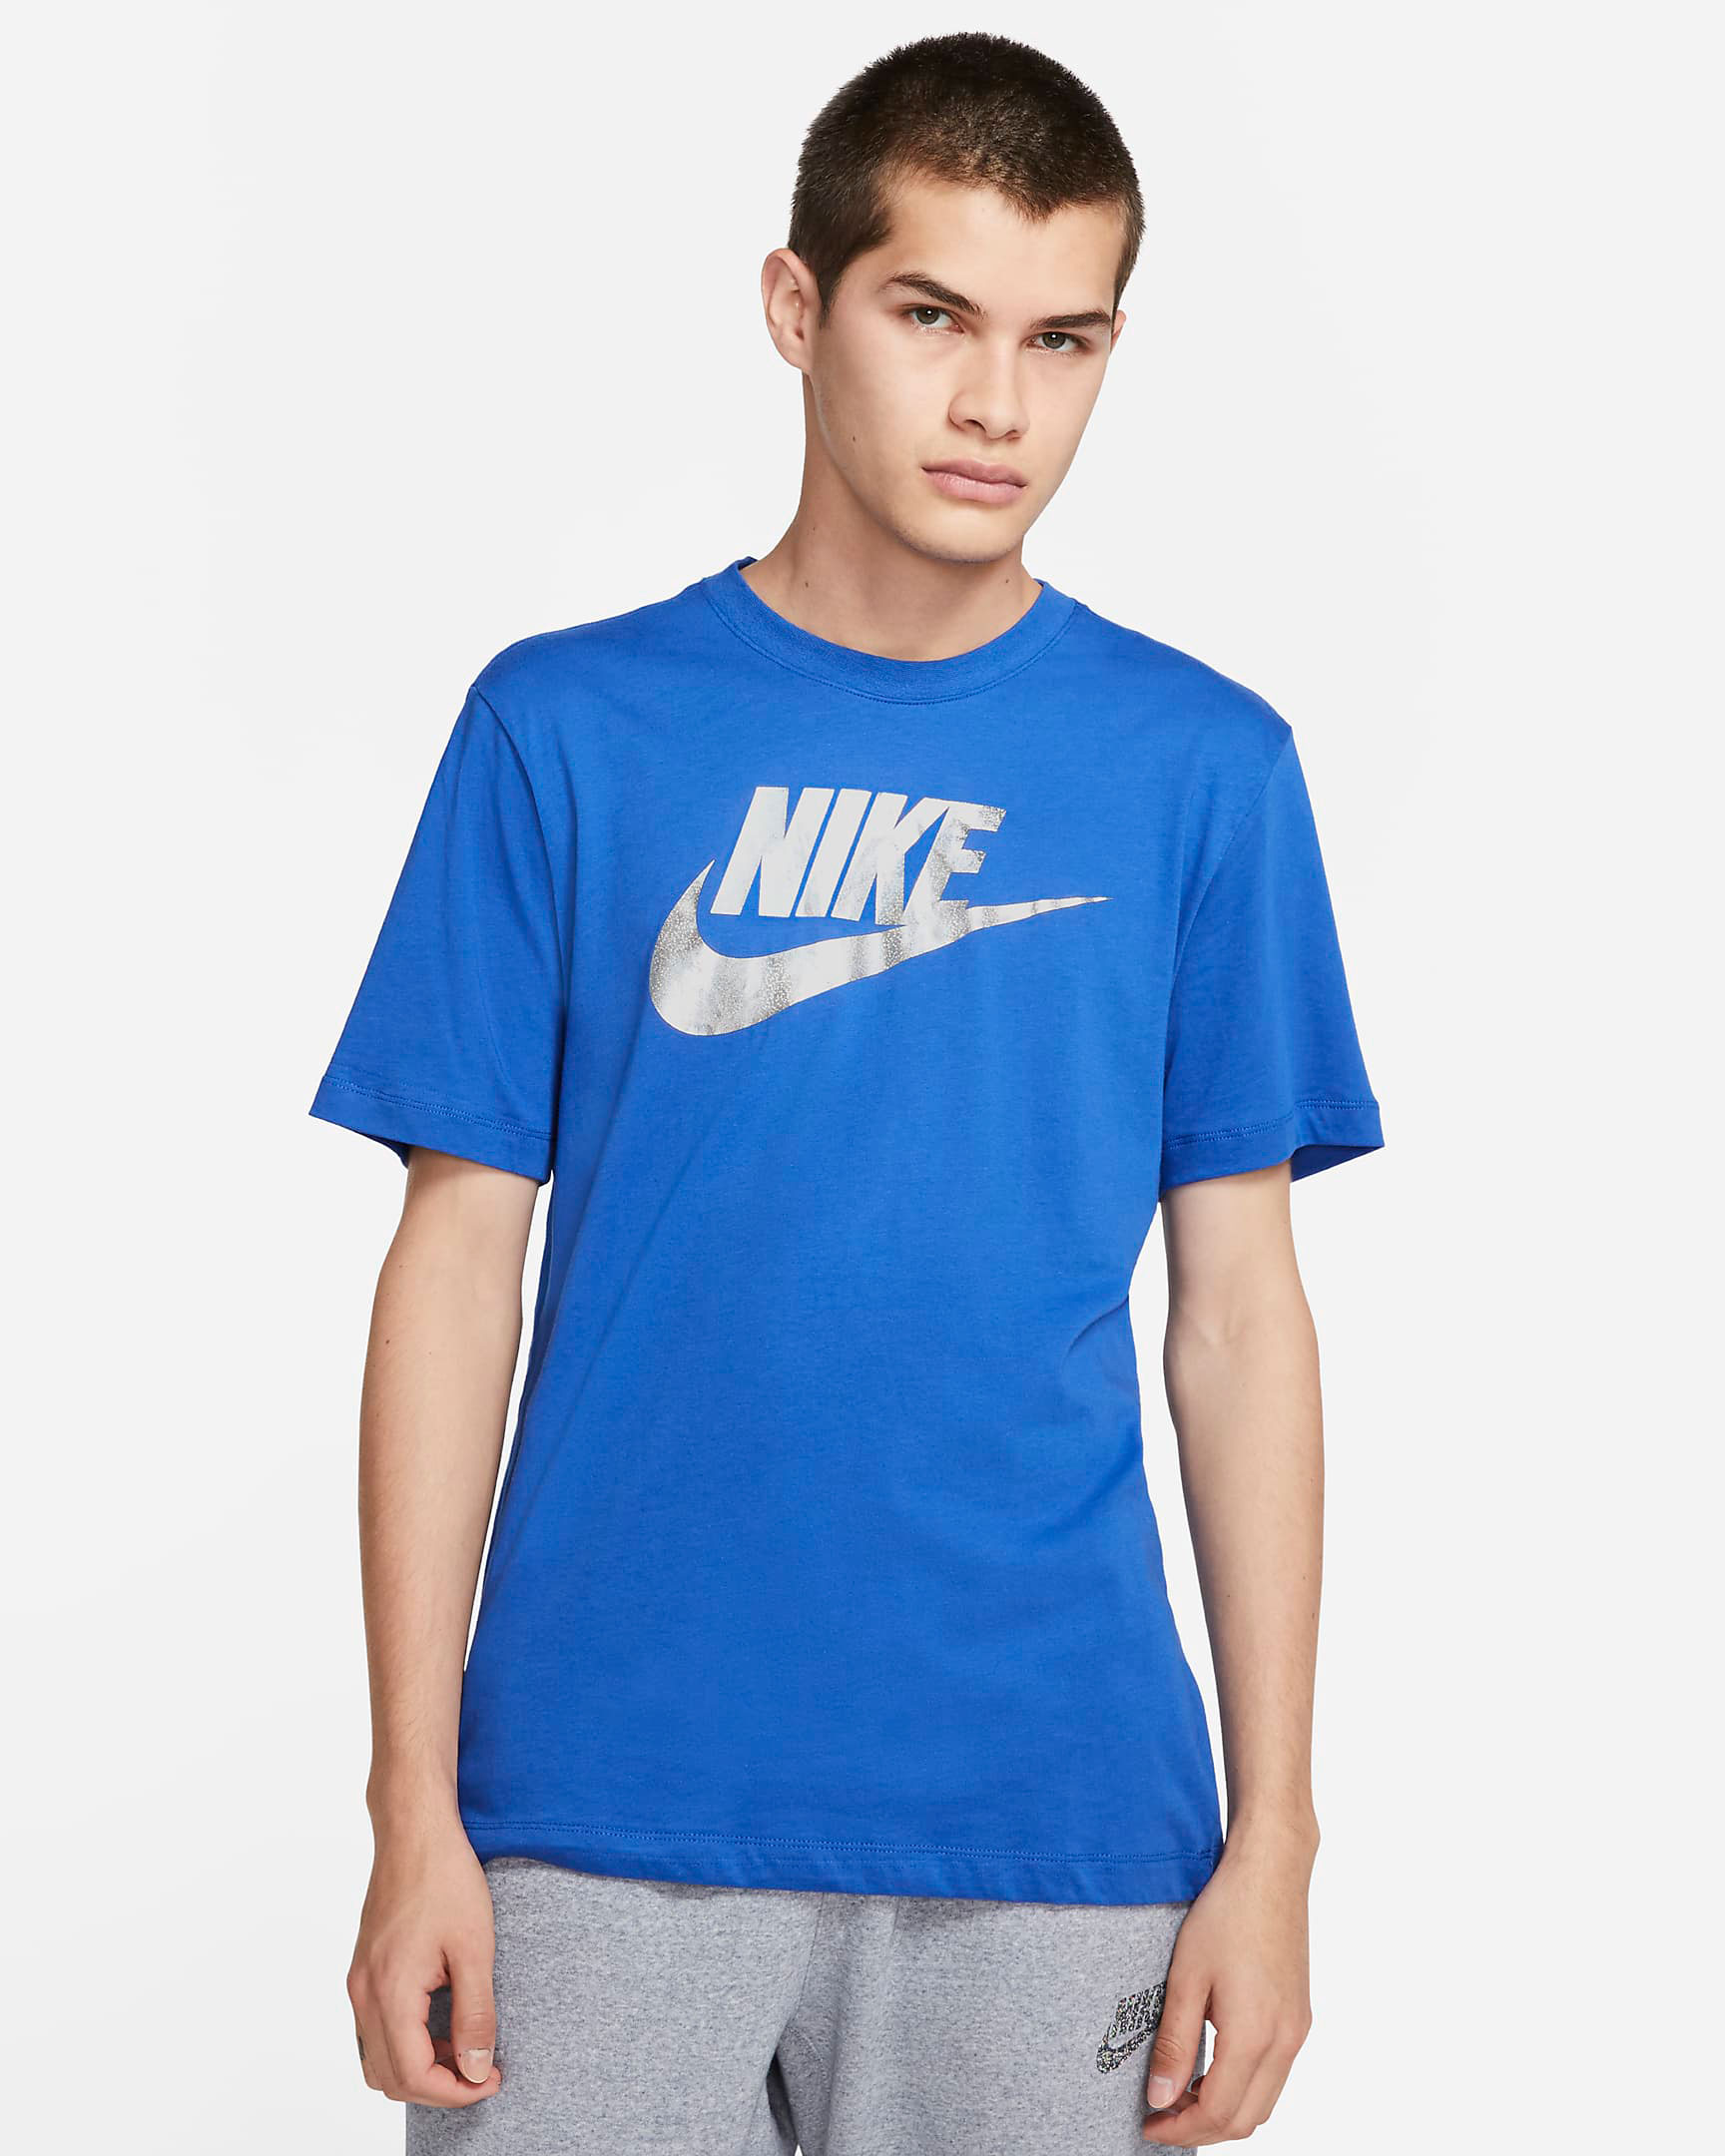 nike-dunk-low-hyper-cobalt-shirt